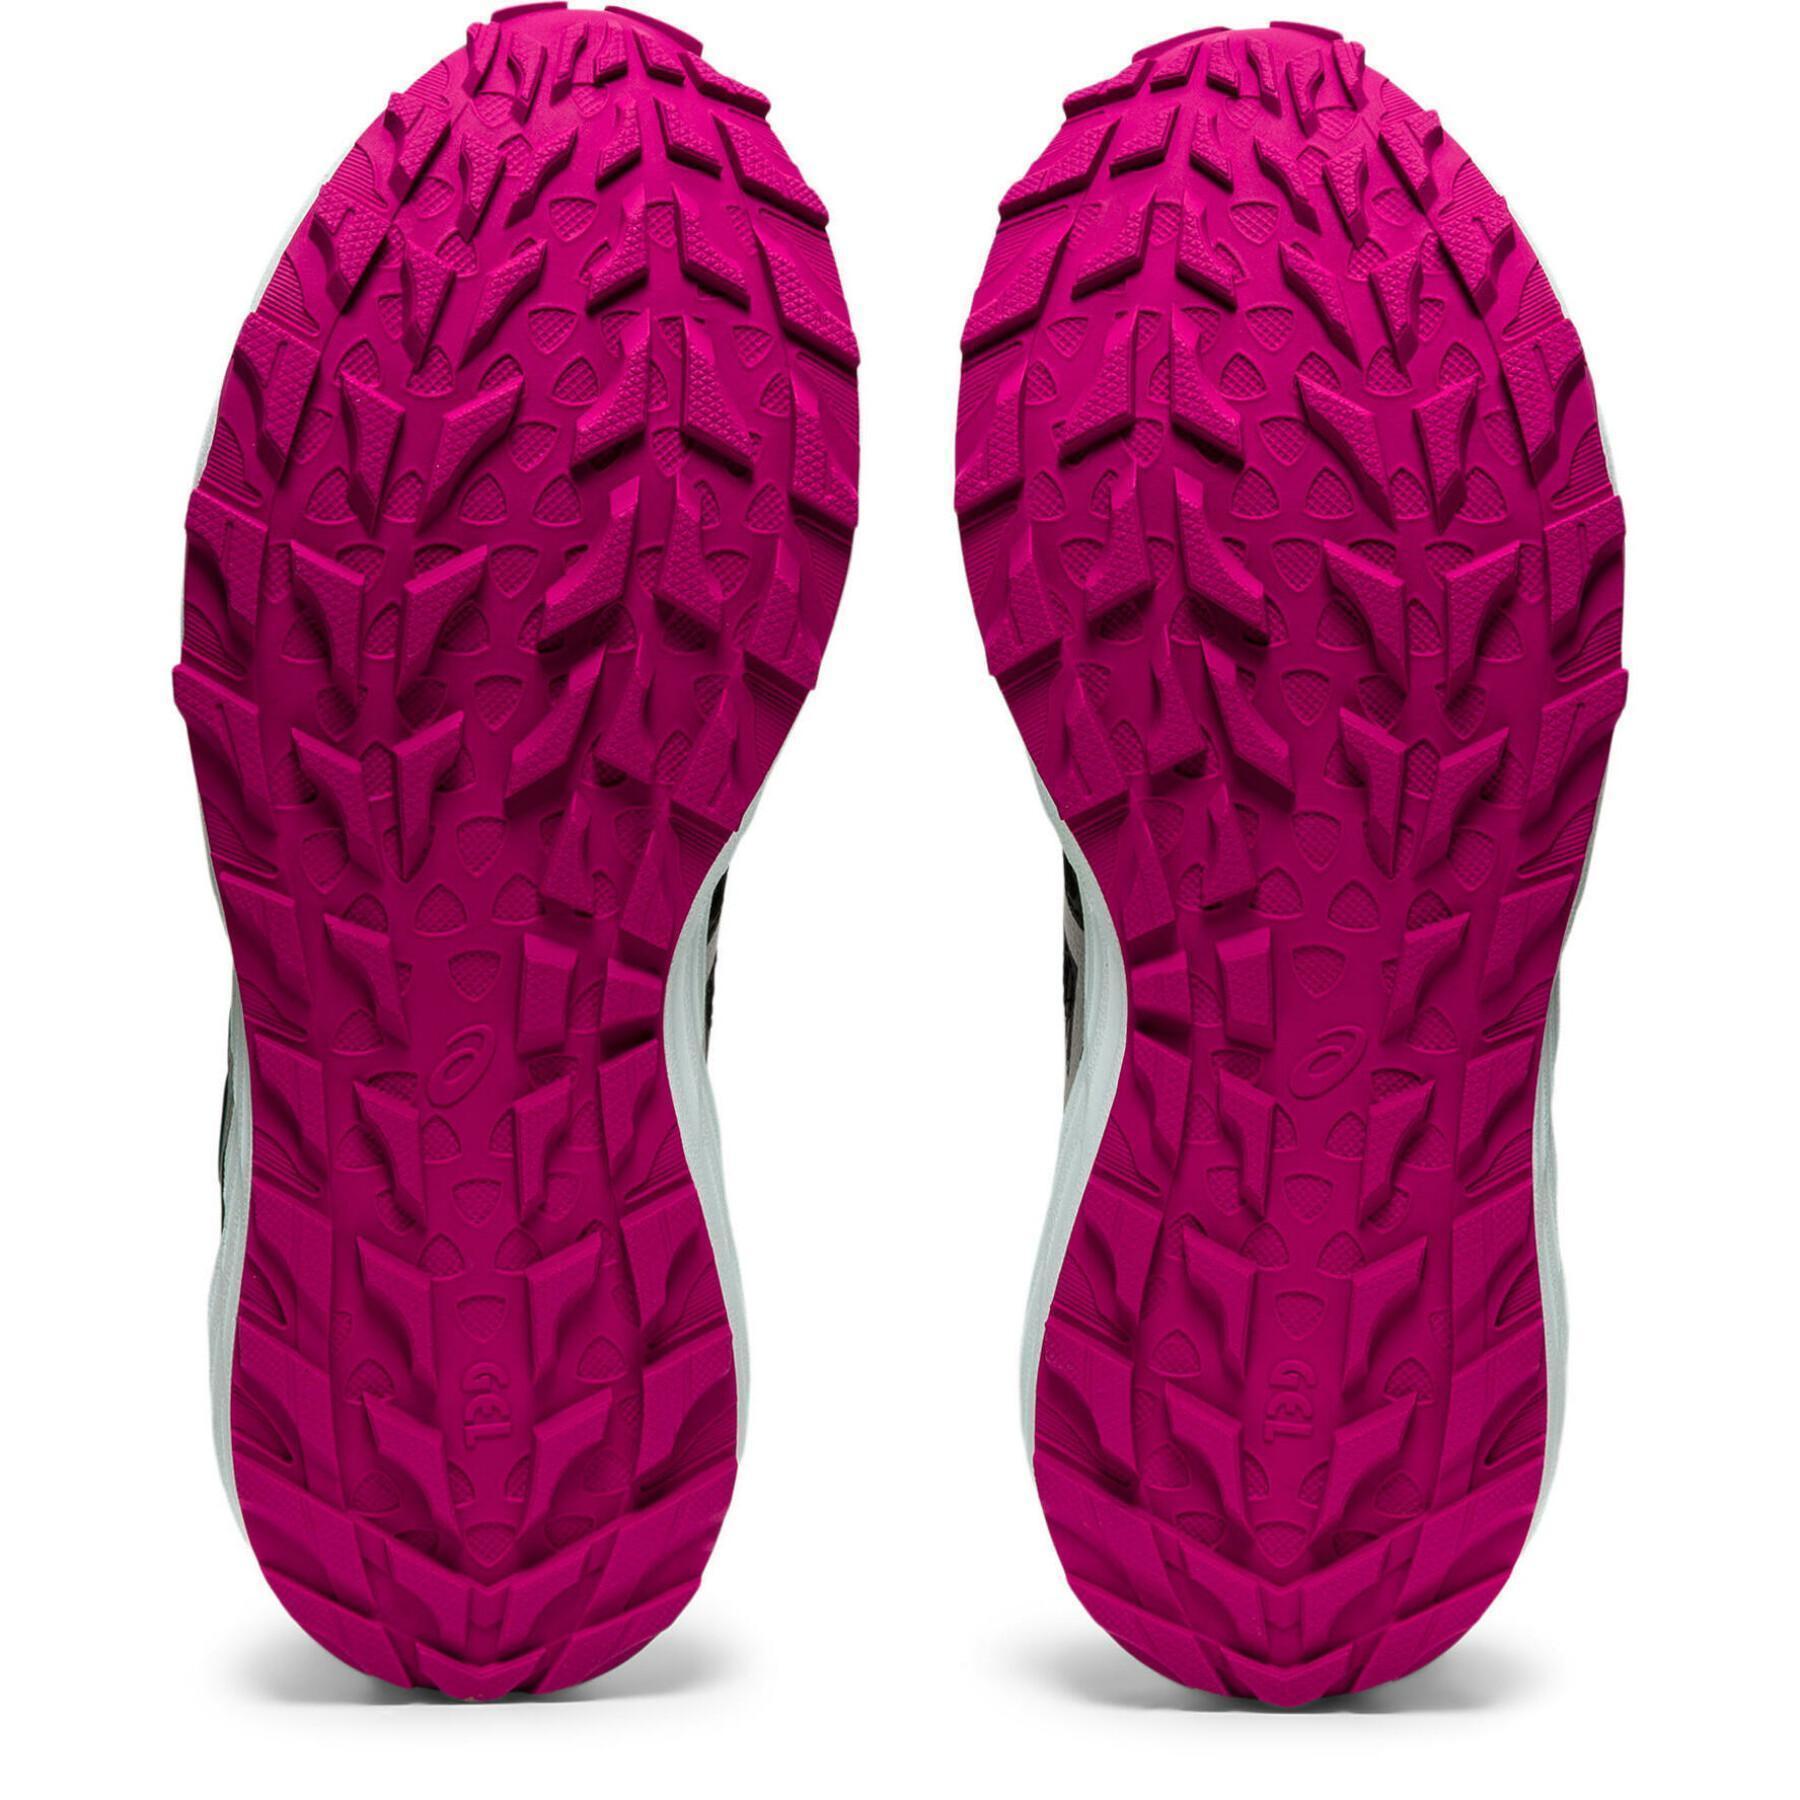 Schuhe für Frauen Asics Gel-Sonoma 6